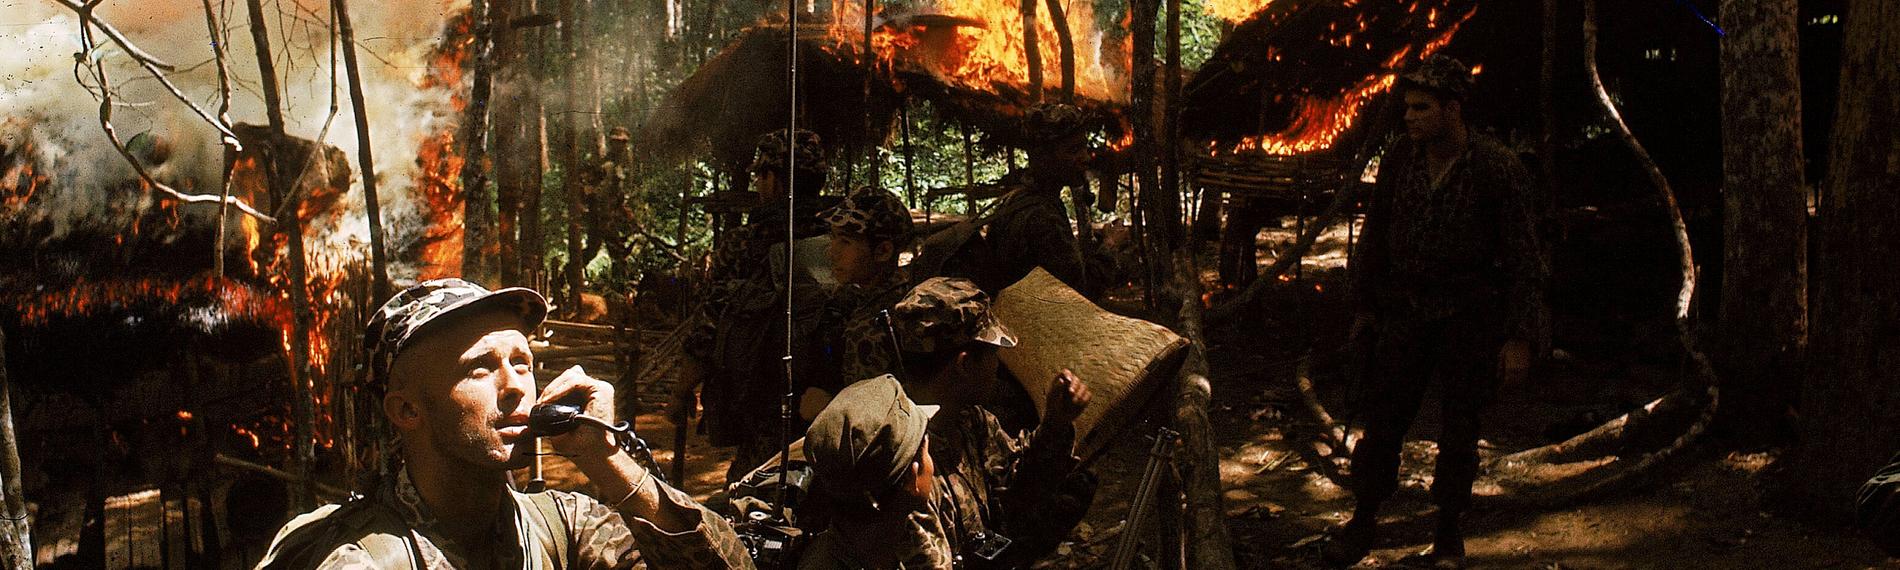 "Der Preis des Krieges - Vietnam": Ein US-Soldat telefoniert via Funk in einem Wald, umgeben von brennenden Hütten. Um ihn herum stehen weitere Soldaten.